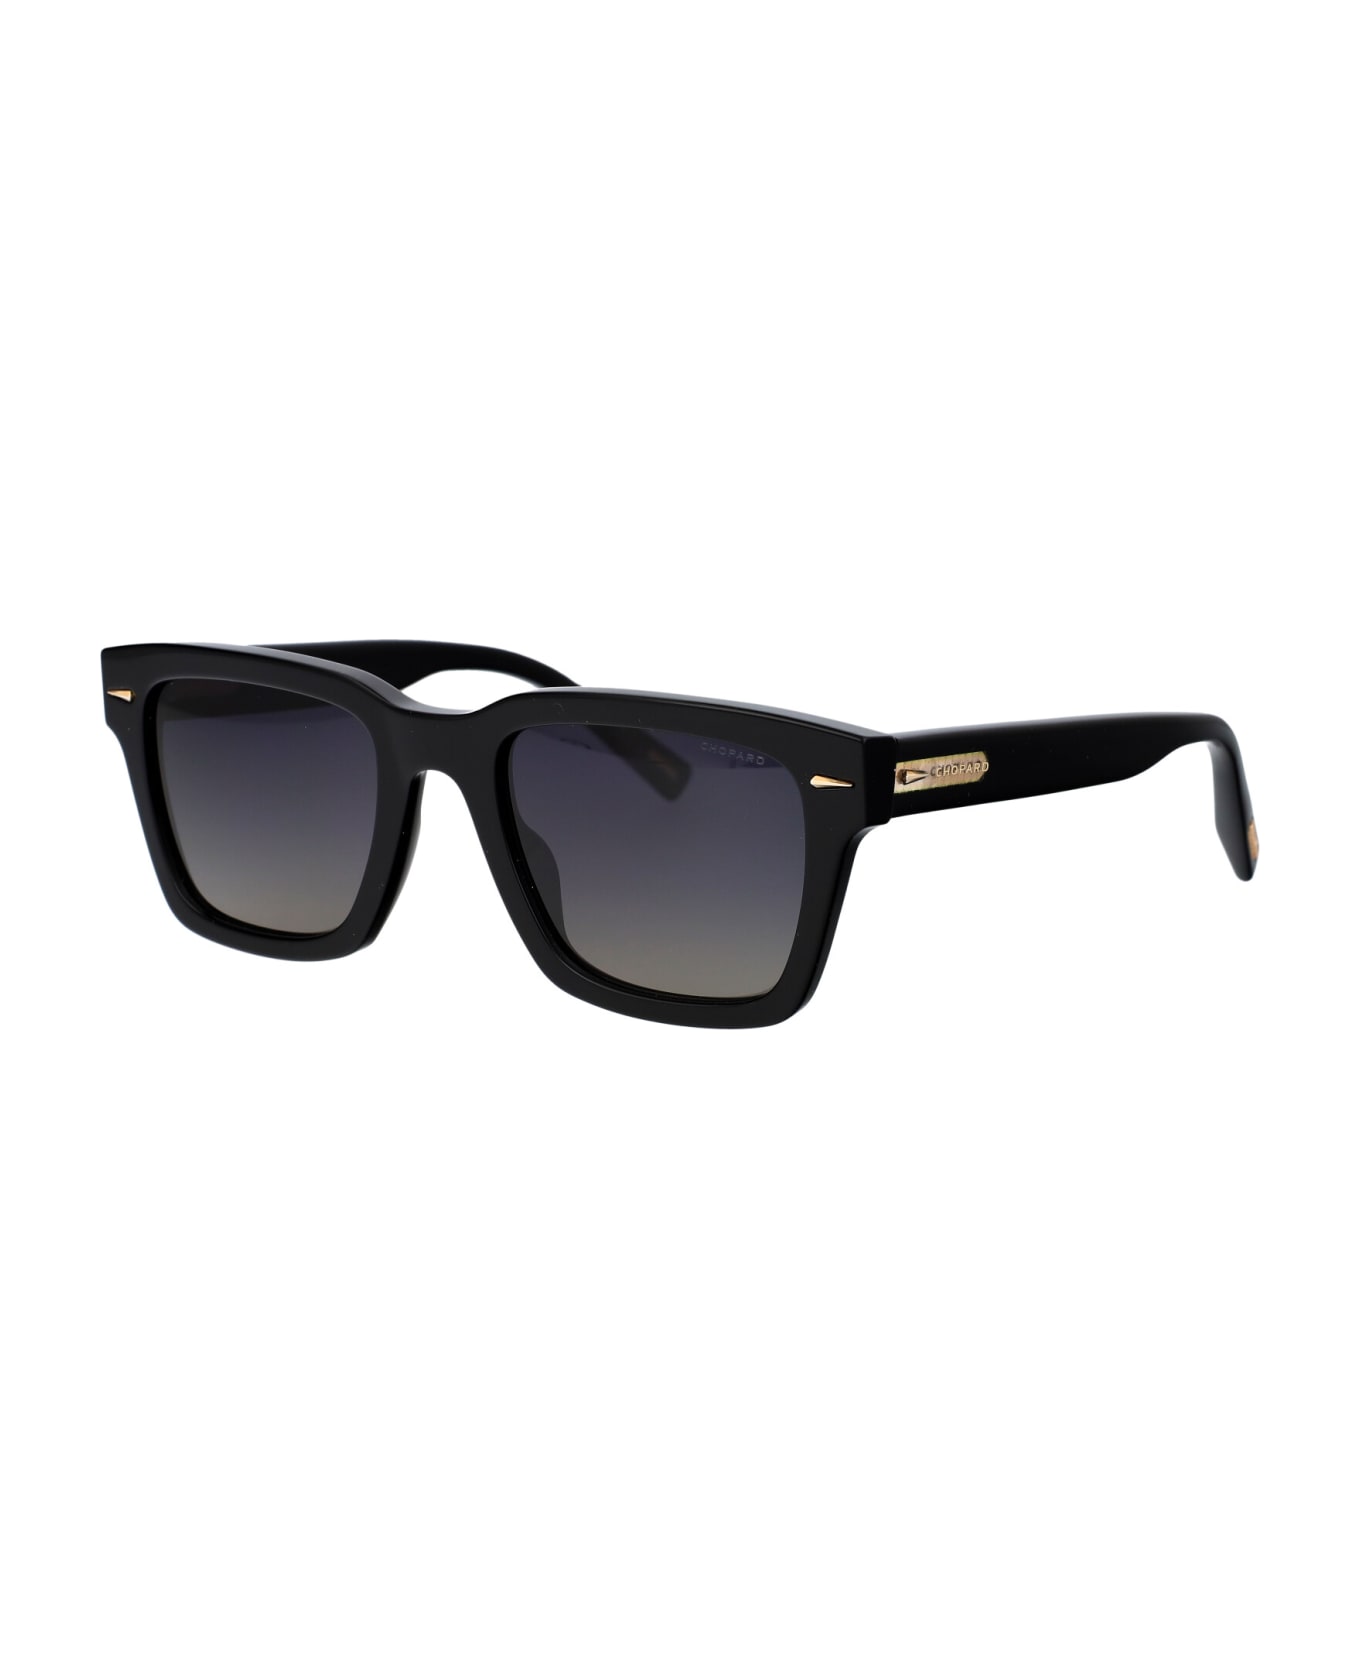 Chopard Sch337 Sunglasses - 700Z BLACK